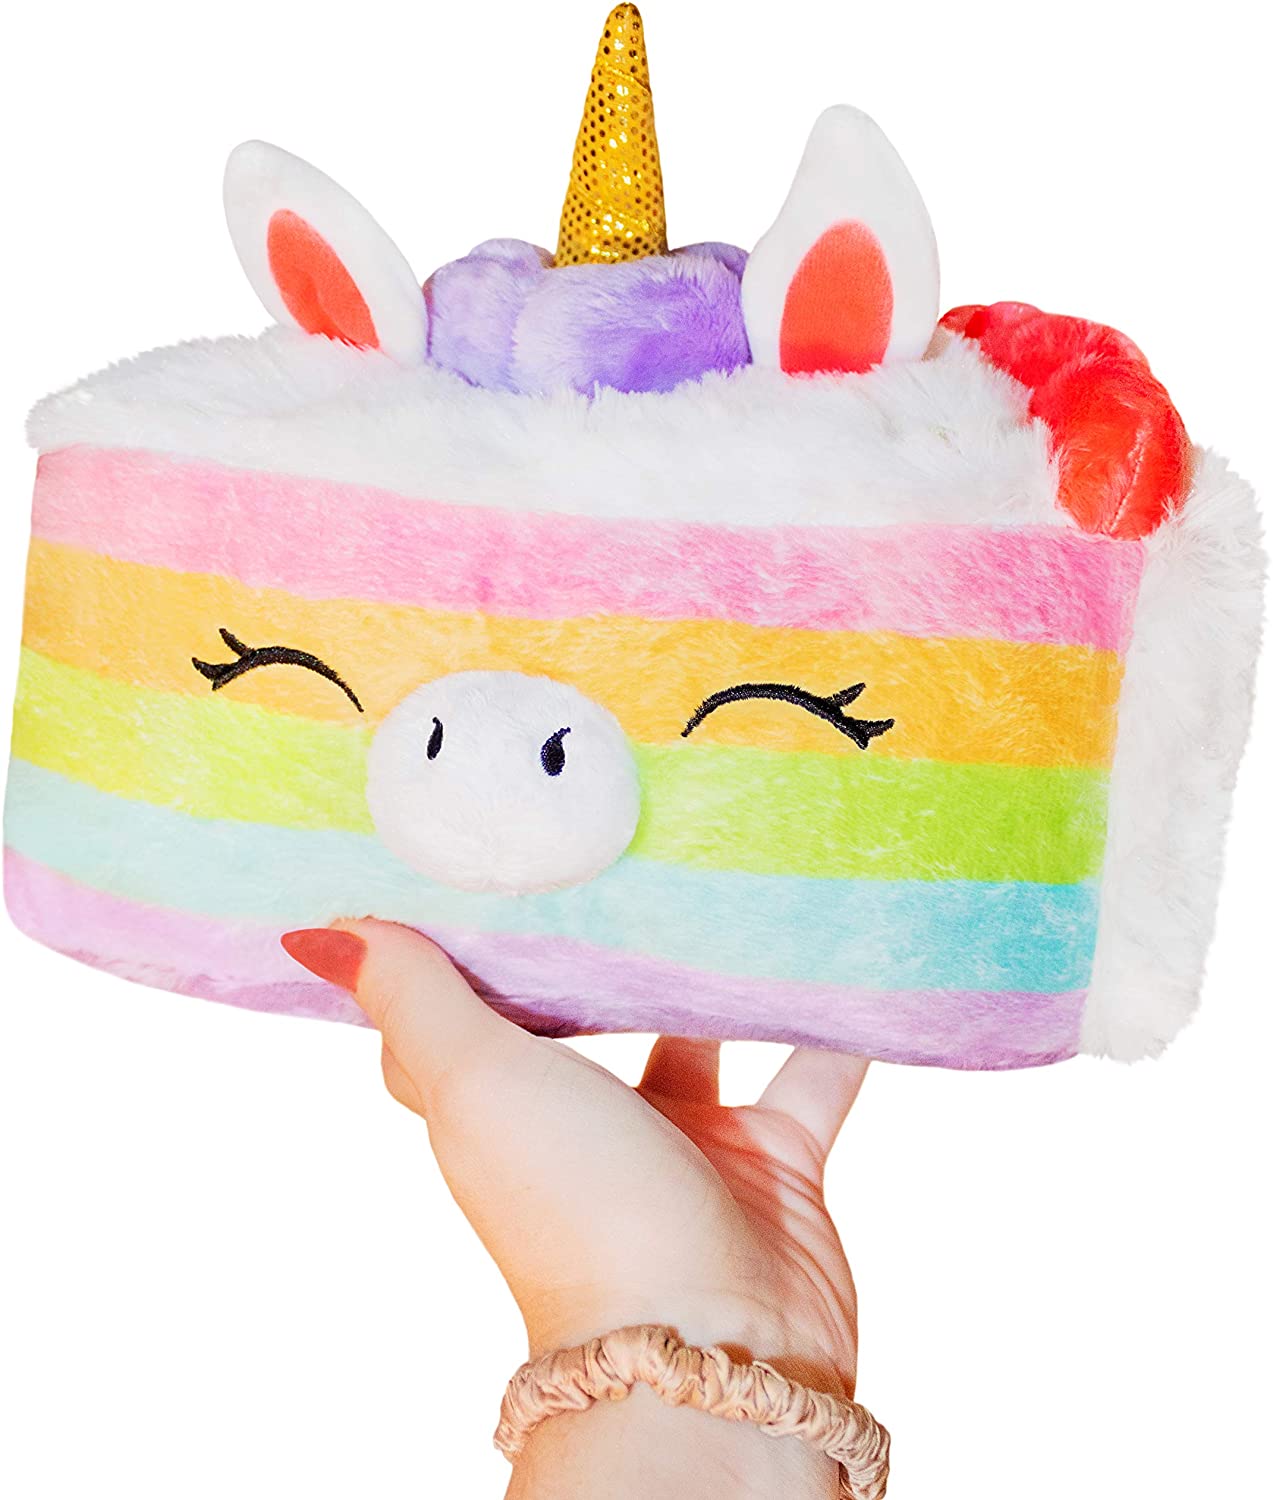 Squishable Mini Comfort Food Unicorn Cake 9" Plush